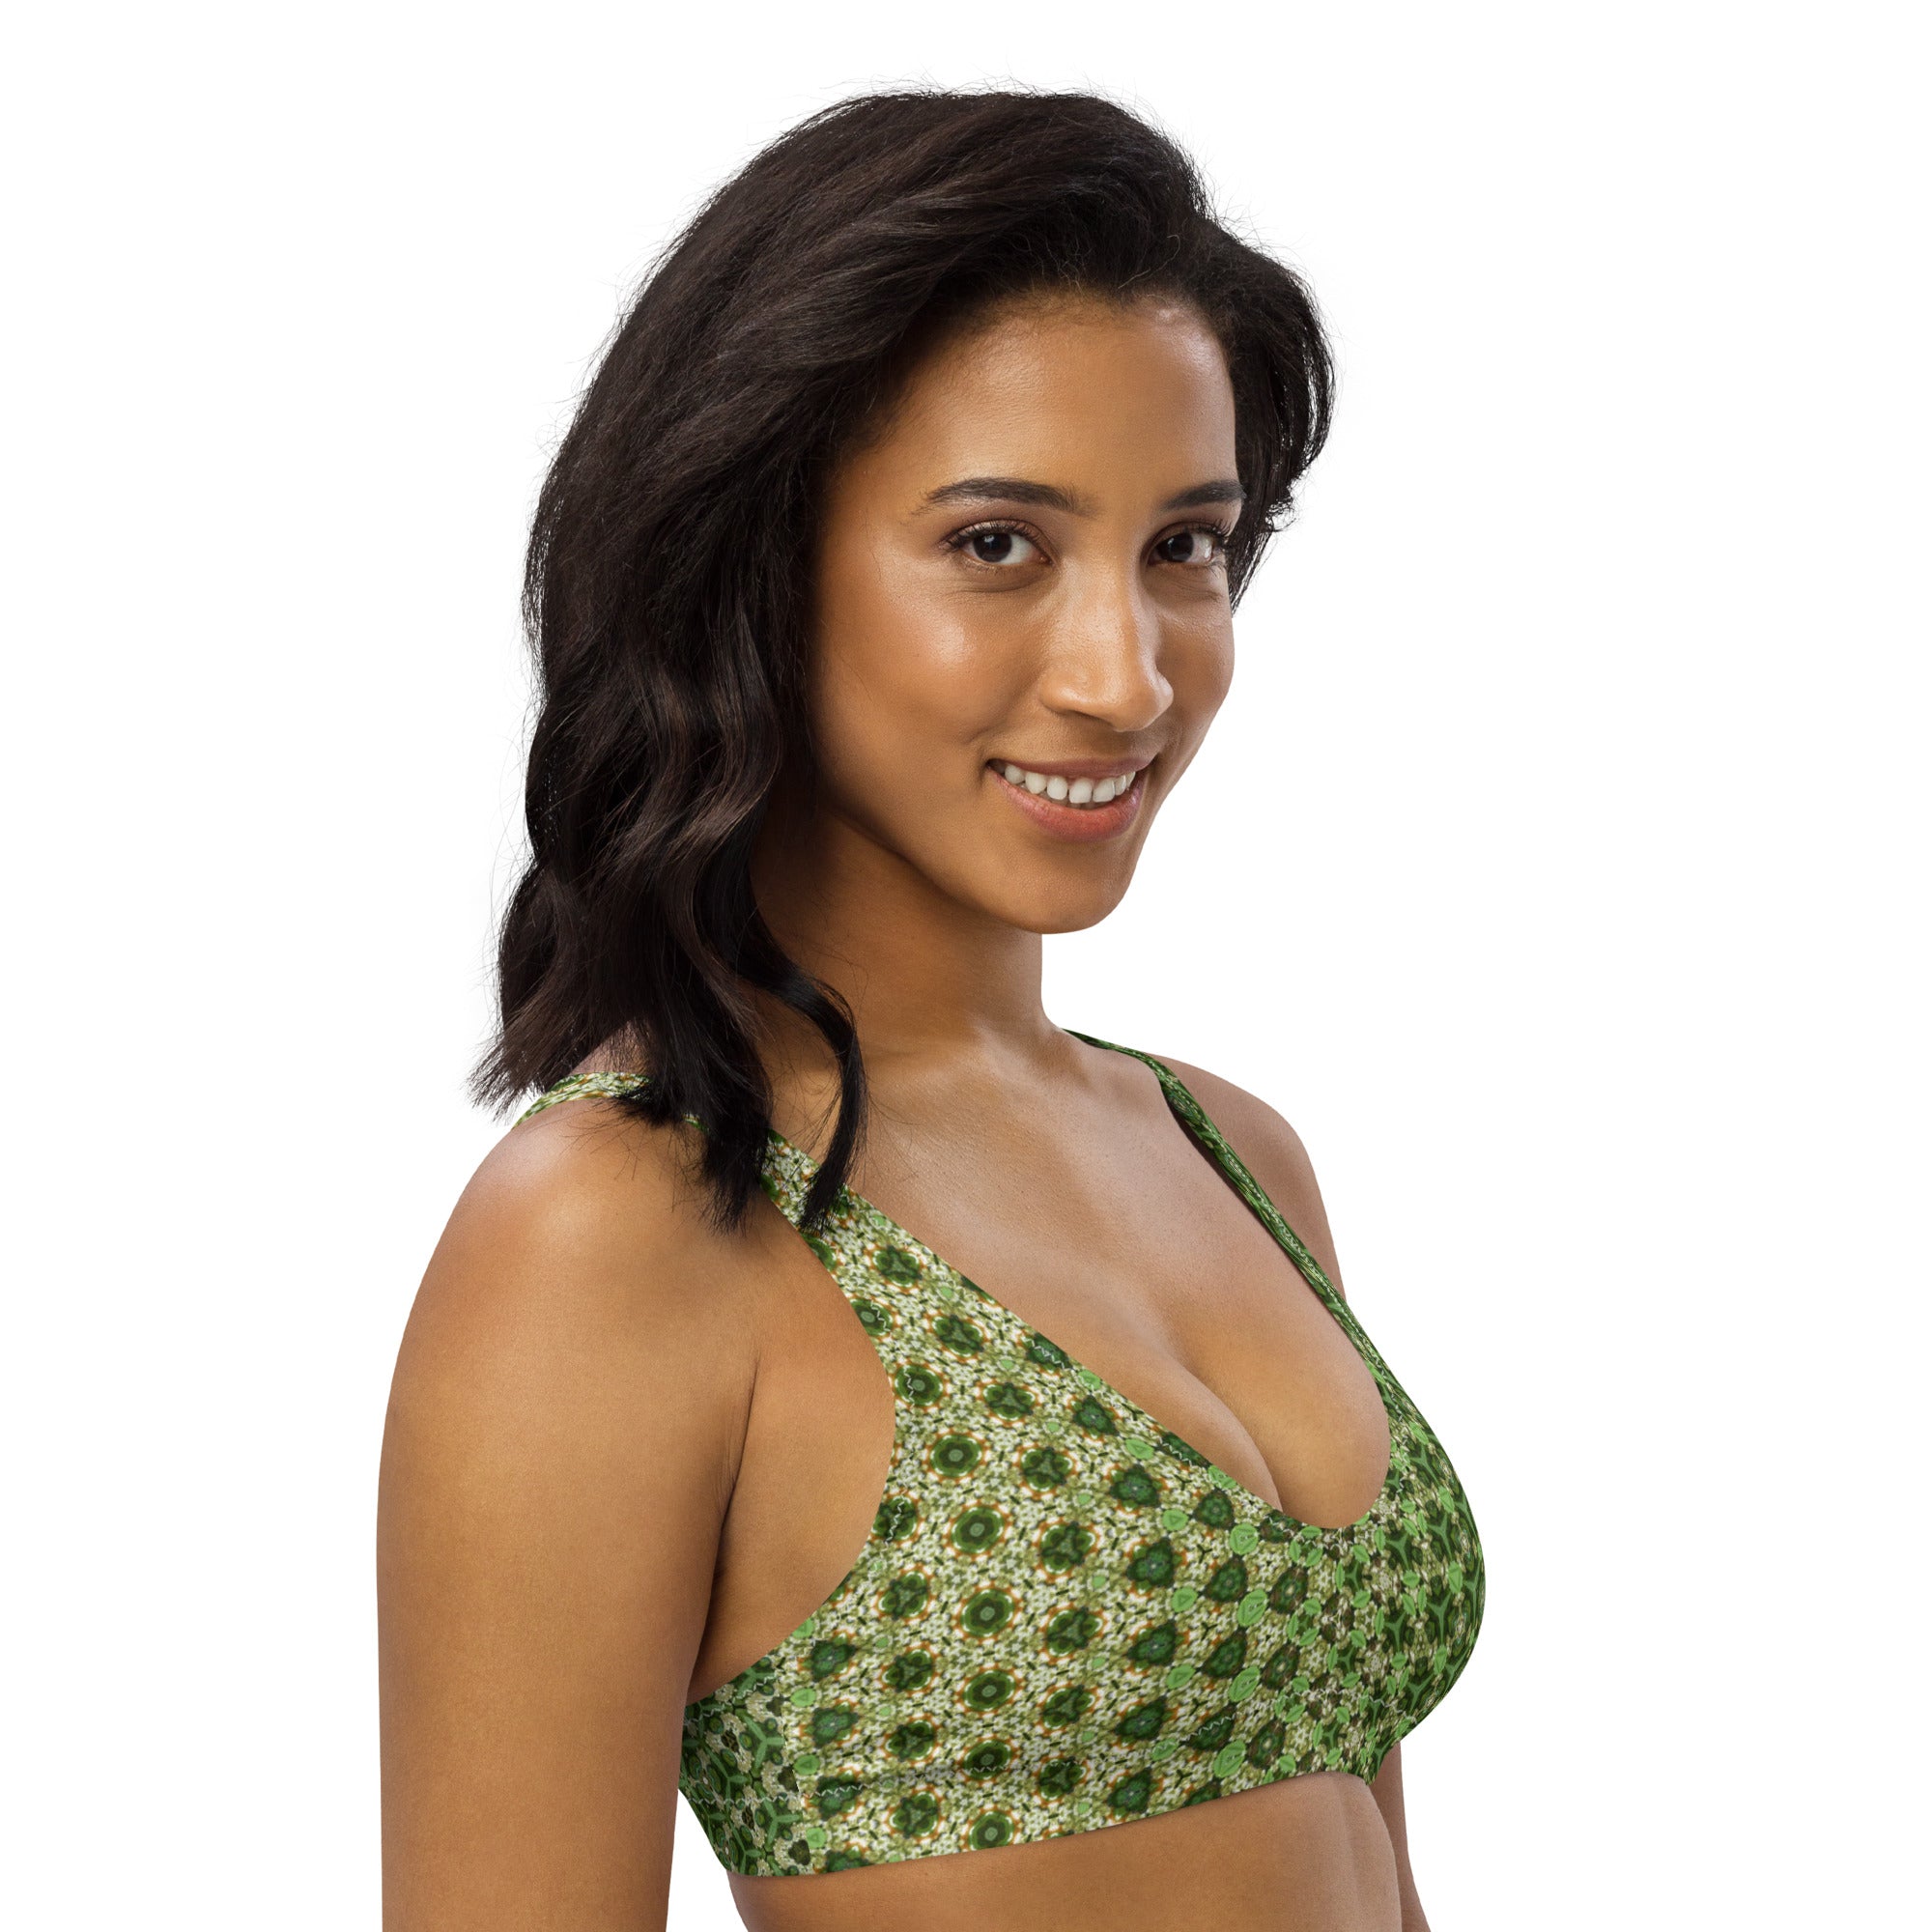 Scarabee Green, Recyled padded bikini top, by Sensus Stduio Design